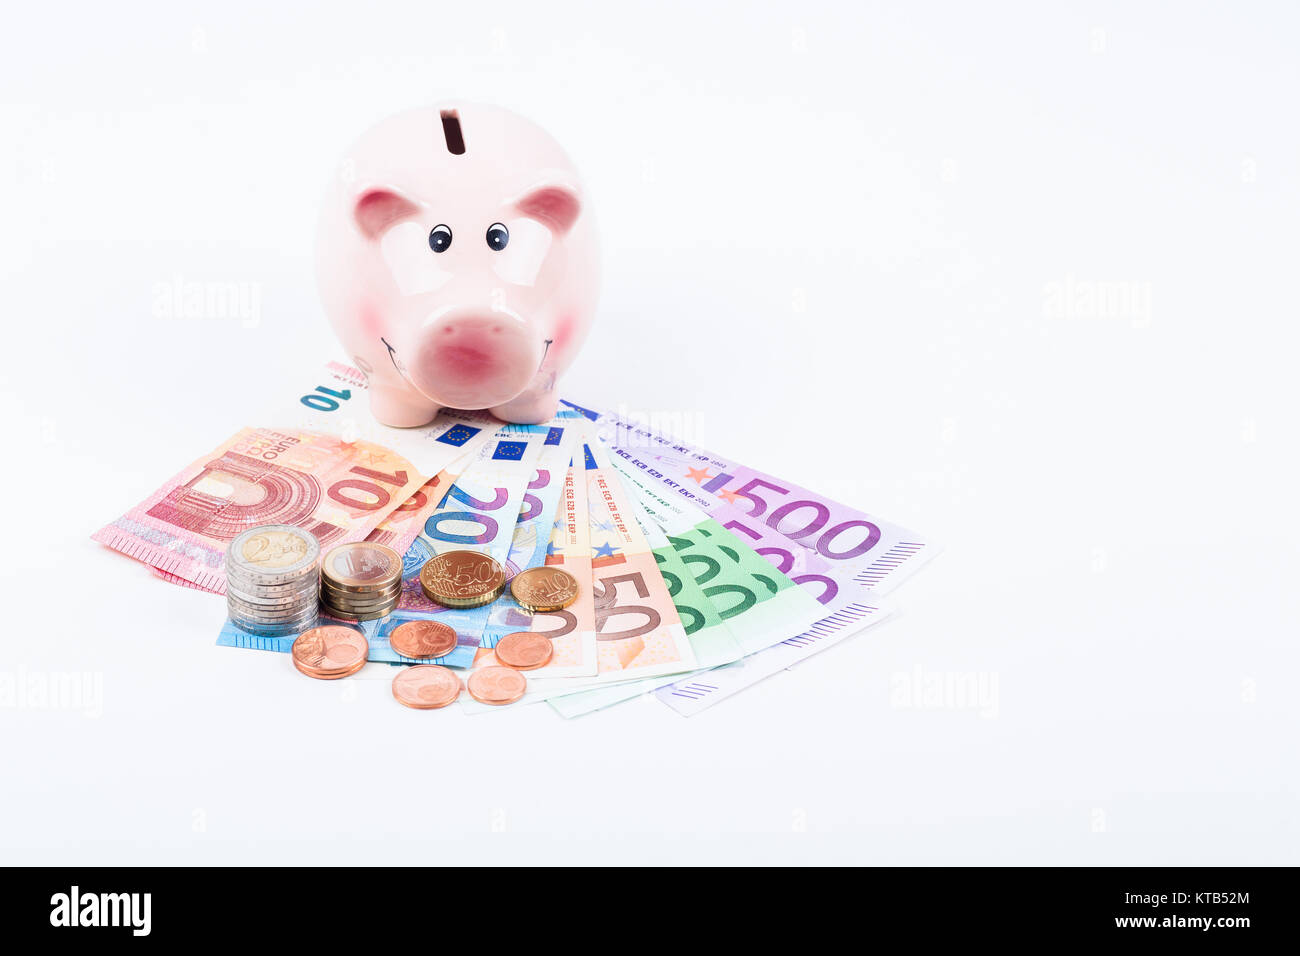 Sparschwein mit Geldscheinen und Münzen auf weisser Fläche Stock Photo